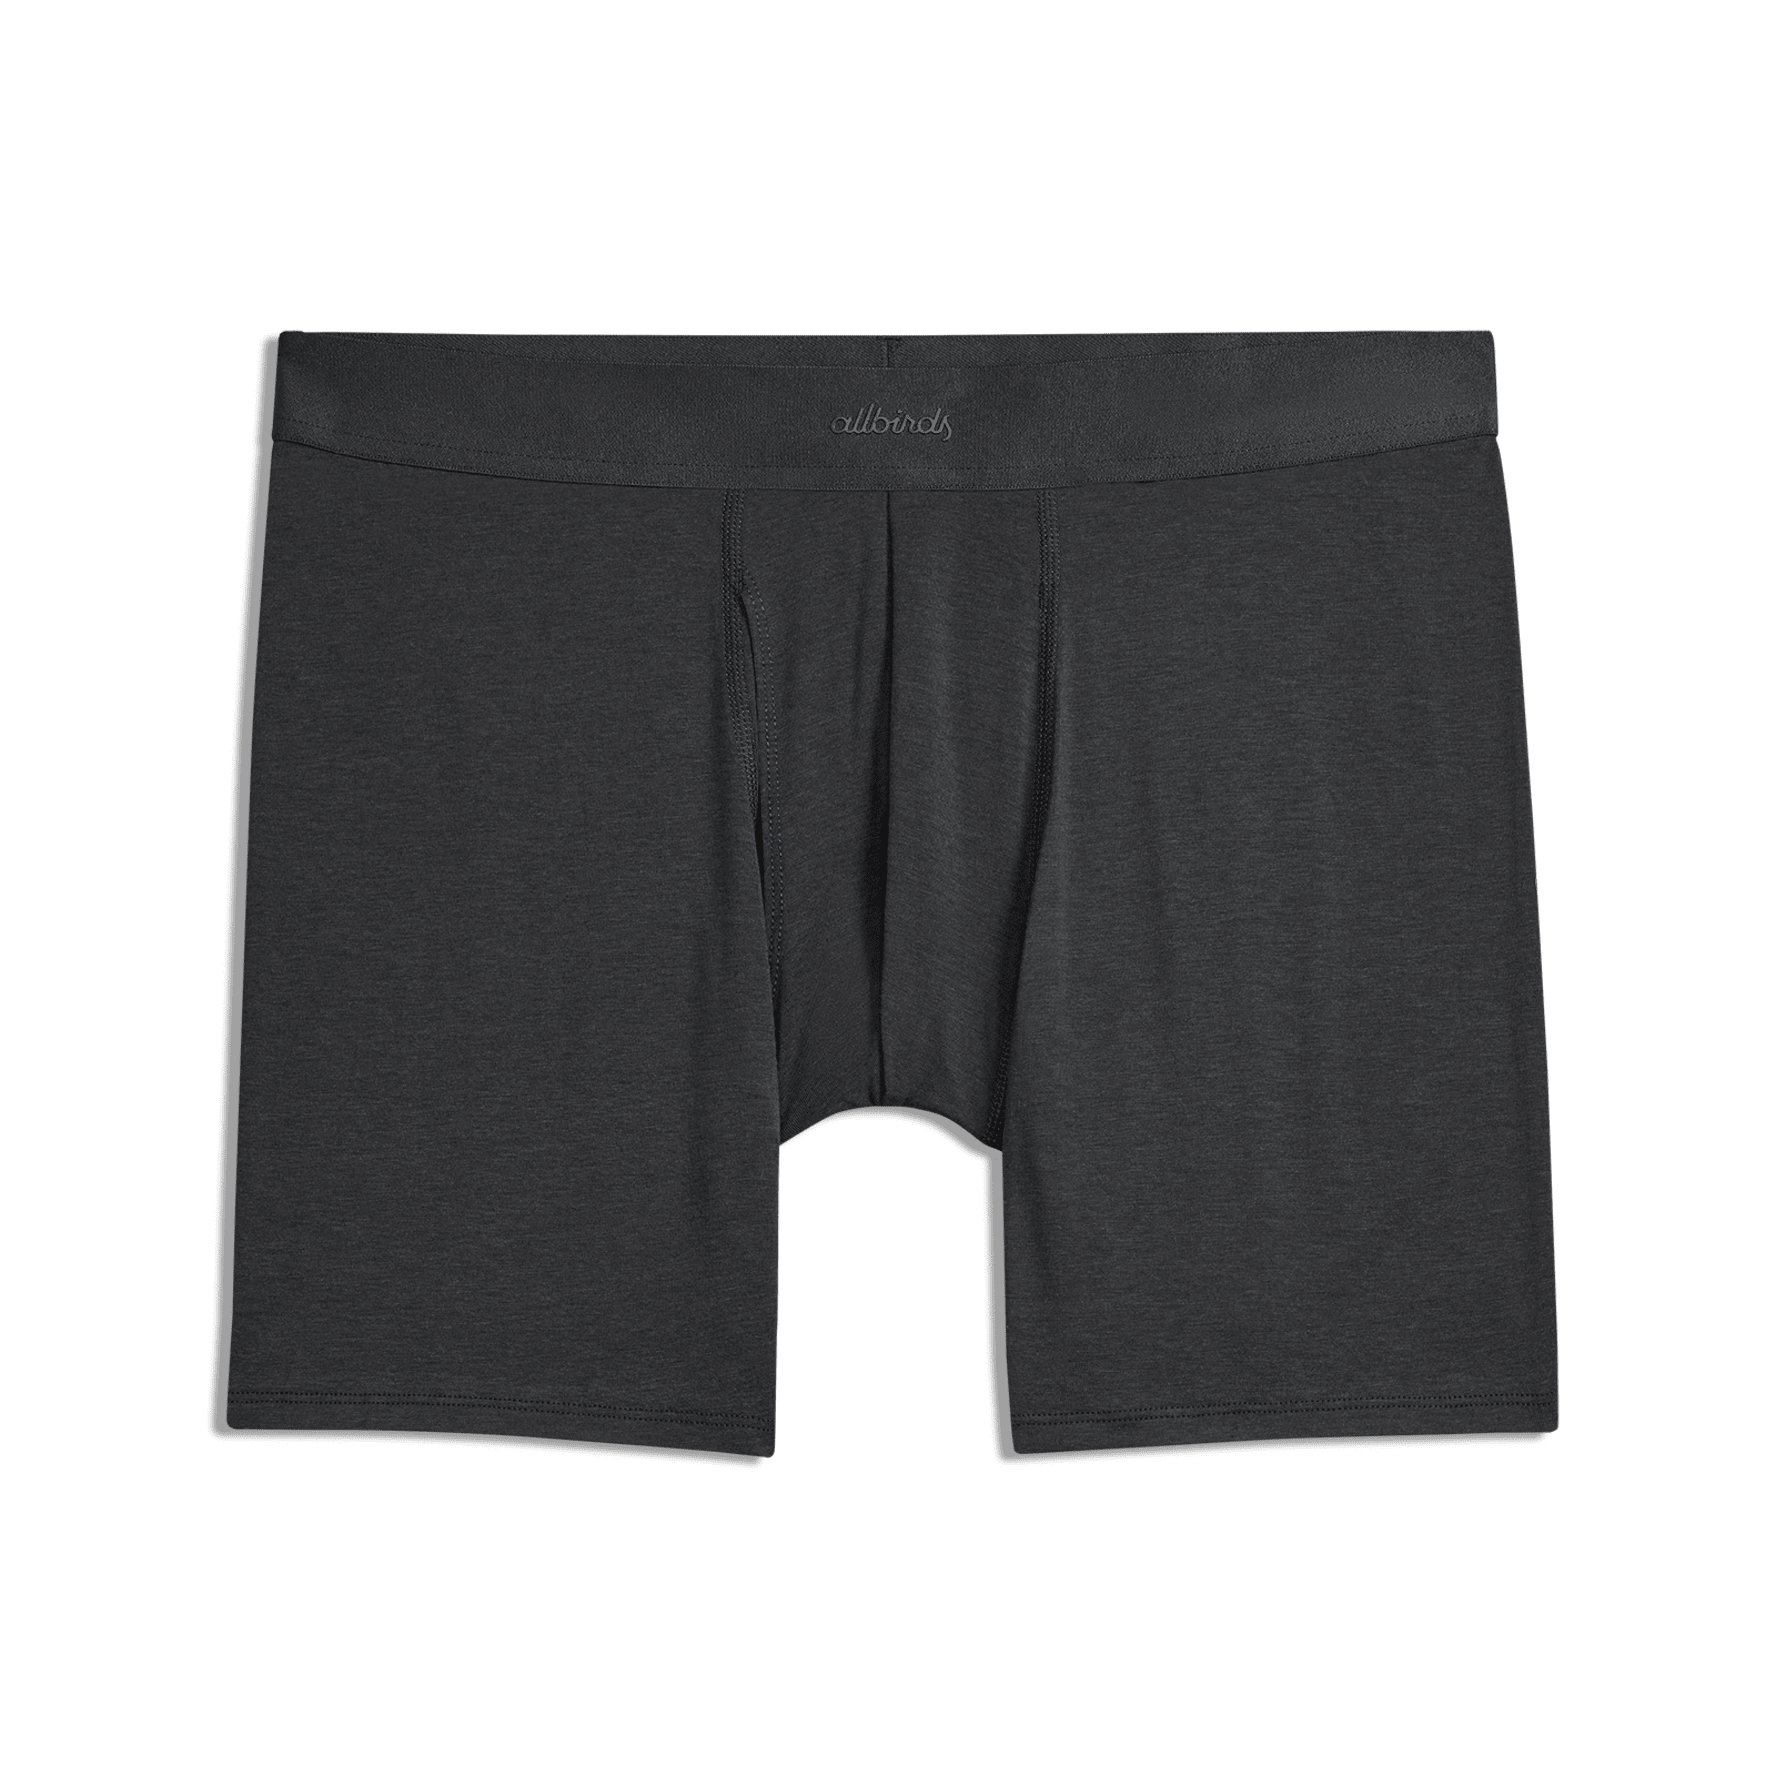 Shop Men's Underwear: Trunks, Boxers & Briefs